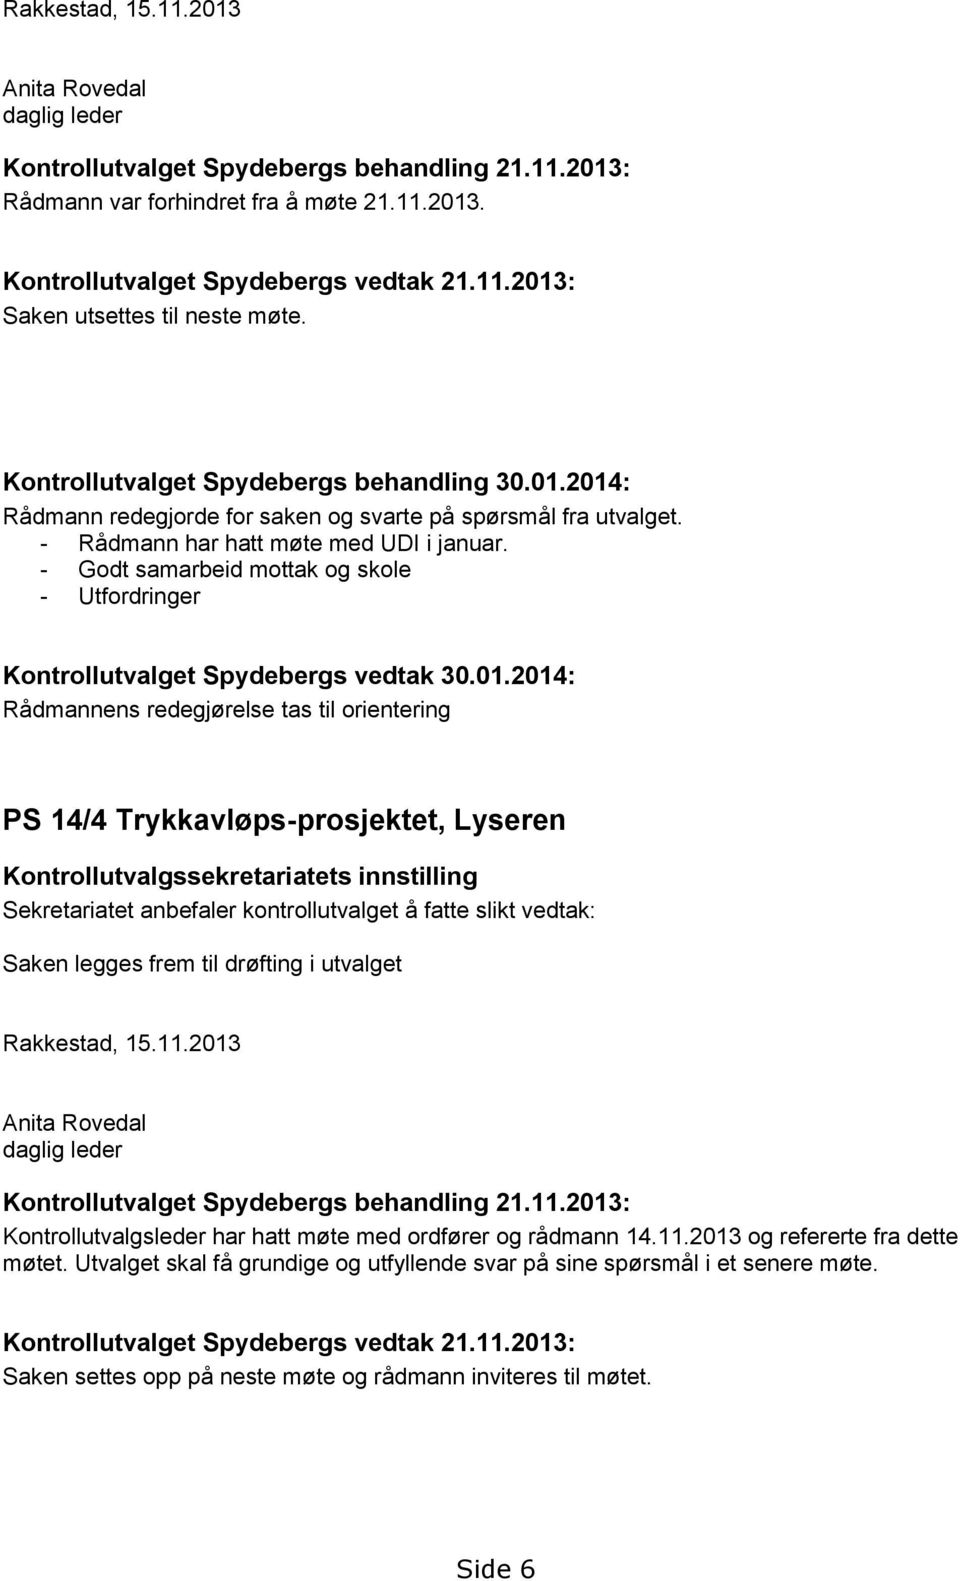 - Godt samarbeid mottak og skole - Utfordringer Kontrollutvalget Spydebergs vedtak 30.01.